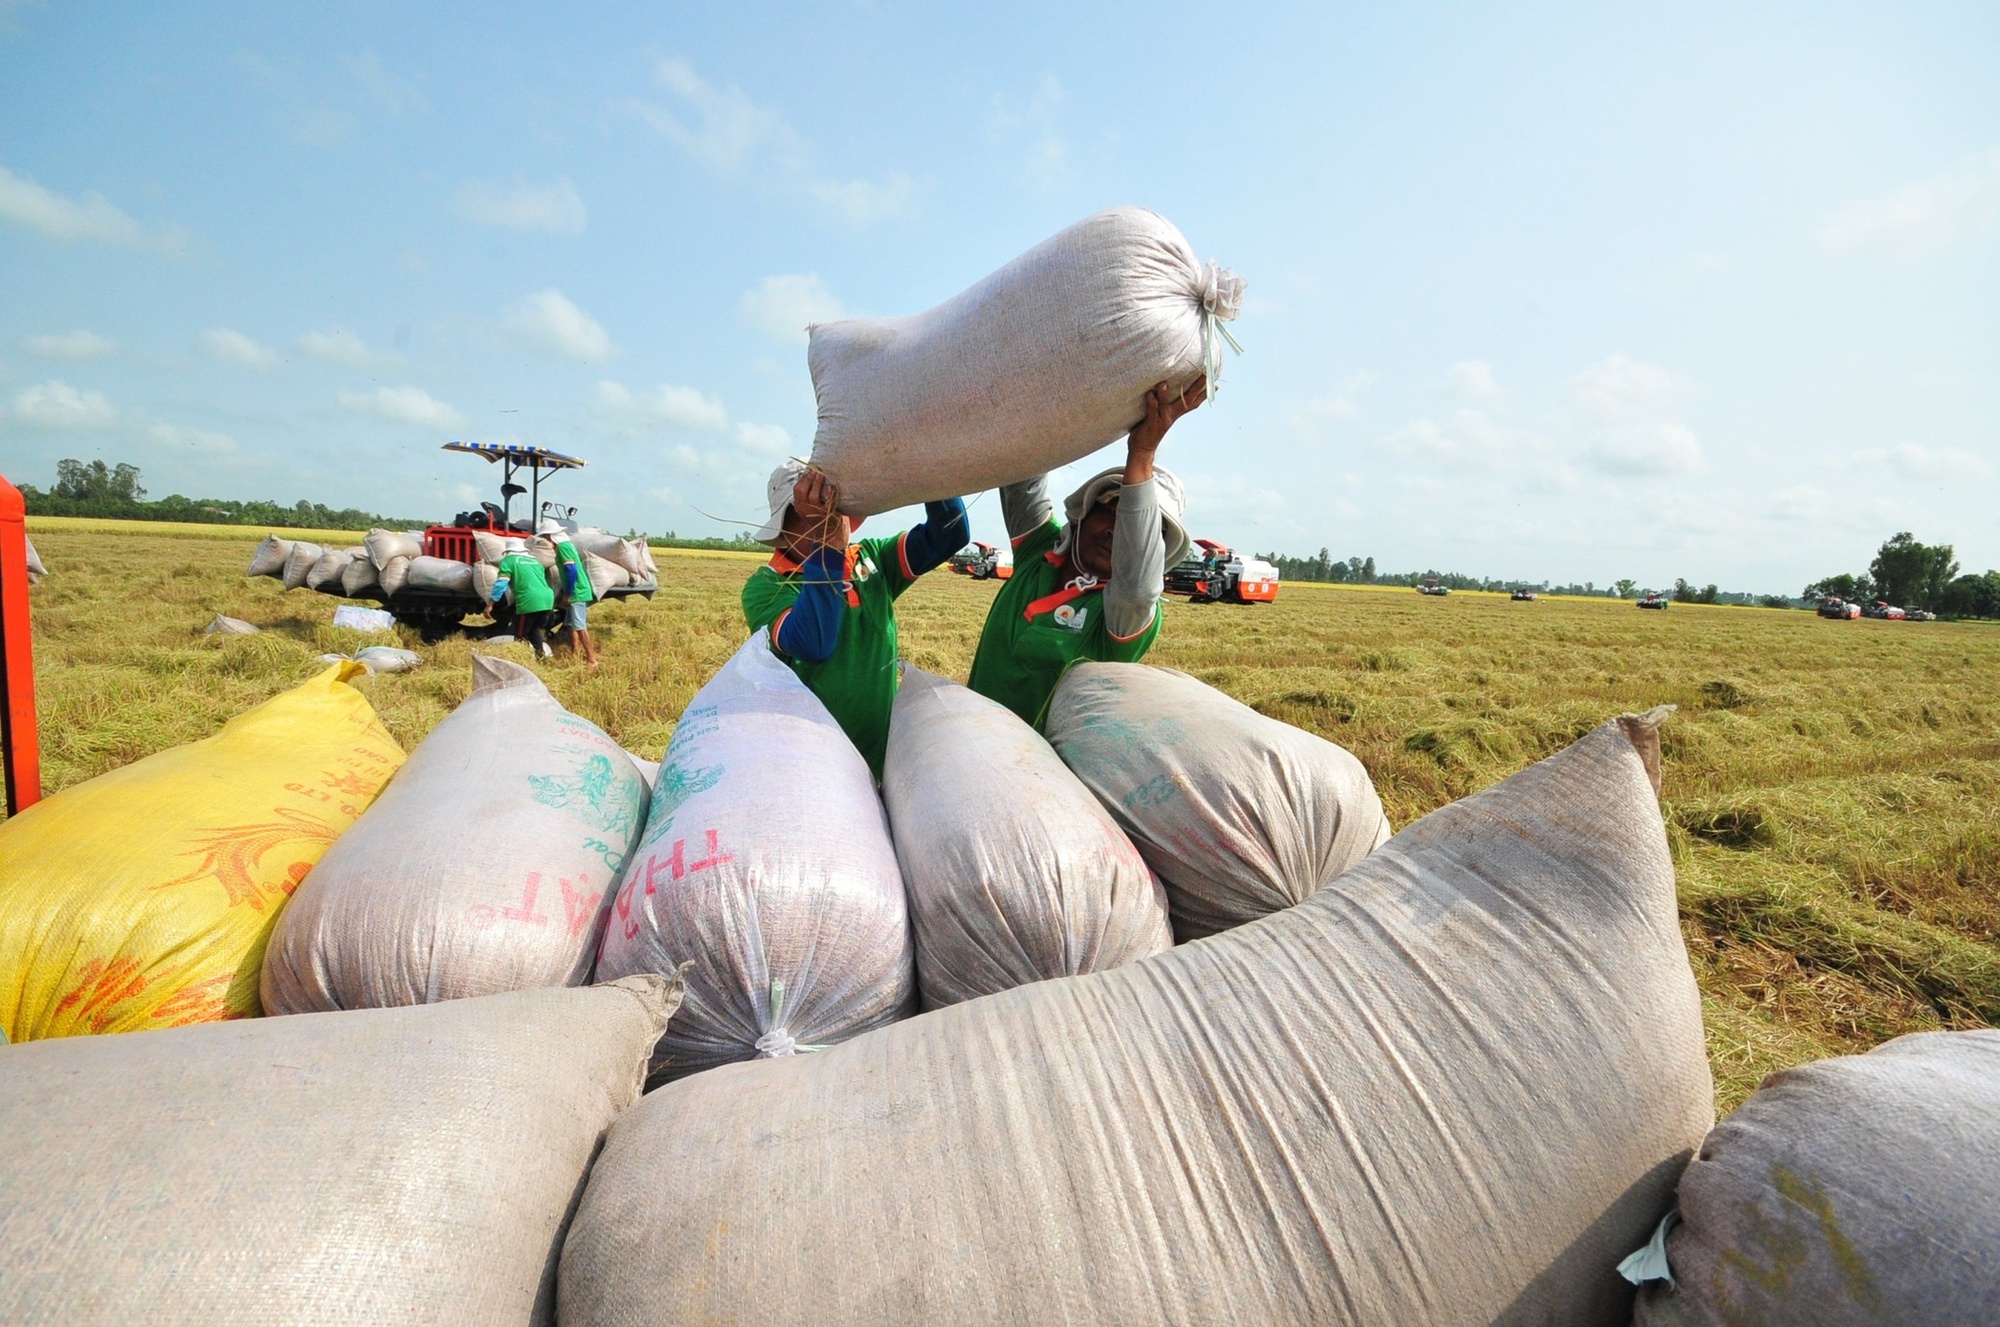 Giá gạo xuất khẩu tăng, nhiều triển vọng trong vụ thu hoạch mới - Ảnh 1.